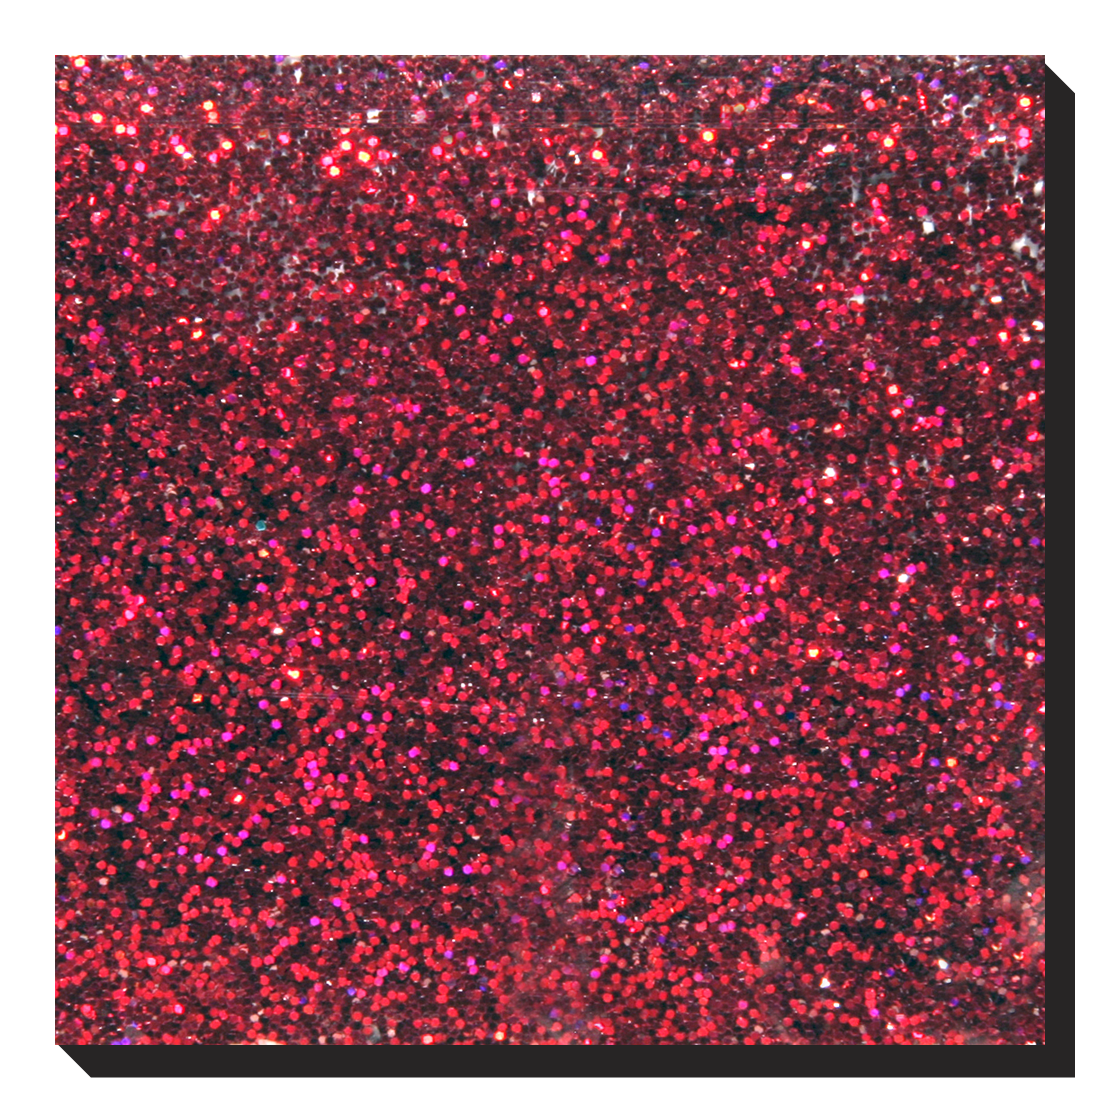 LB300-Hologram Red Holographic / Laser